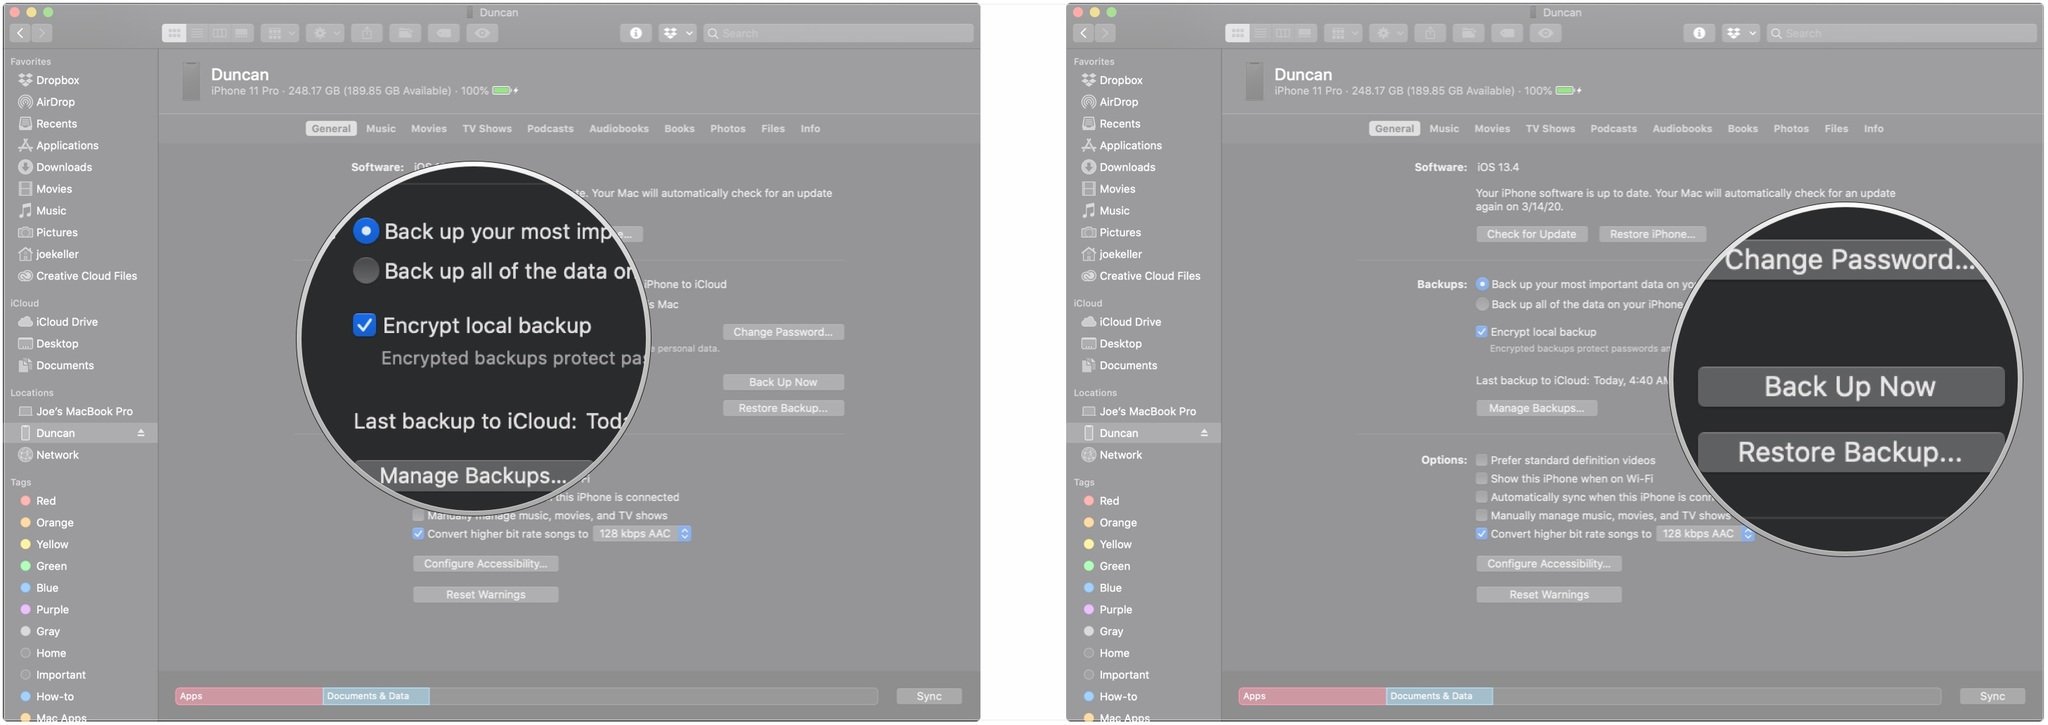 Создайте резервную копию своего iPhone на macOS Catalina, показывая, как установить флажок, затем нажмите «Создать резервную копию сейчас».